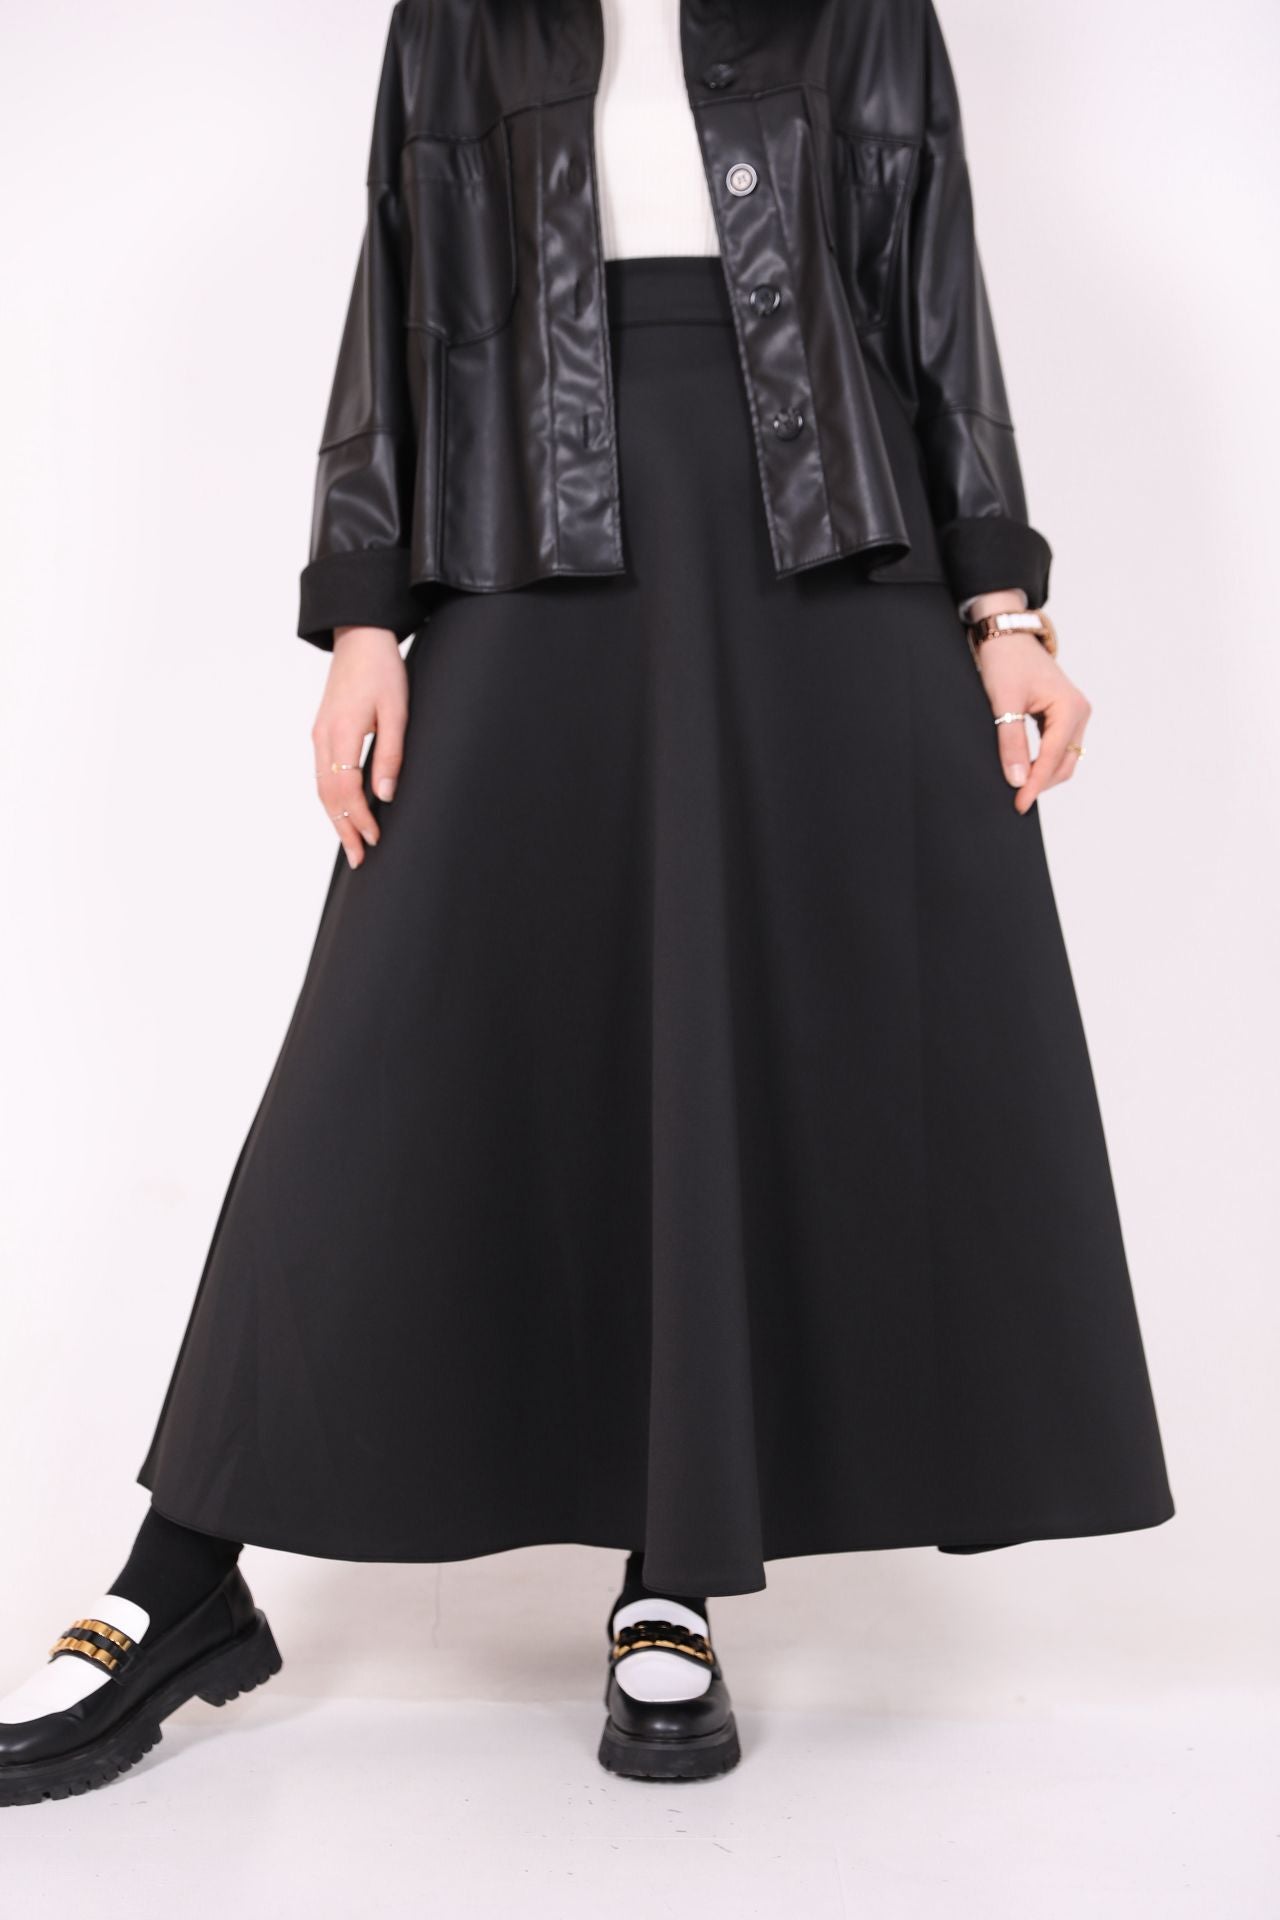 Scuba Fabric Kiloş Skirt Black